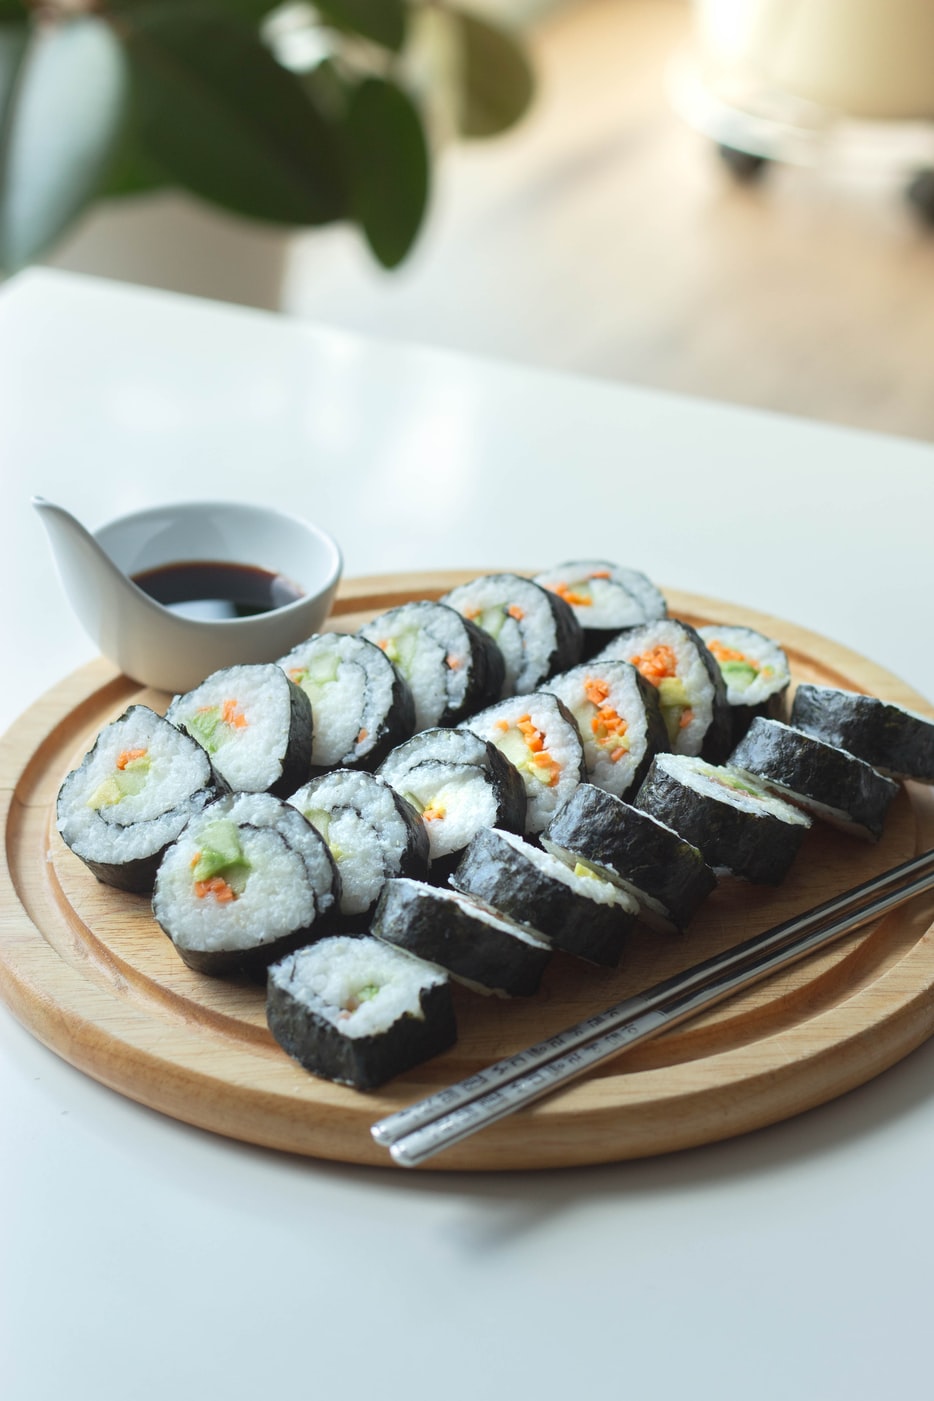 Global Grub DIY Sushi Making Kit - Sushi Kit Includes Sushi Rice, Nori  Sushi Seaweed, Rice Vinegar Powder, Sesame Seeds, Wasabi Powder, Bamboo  Sushi